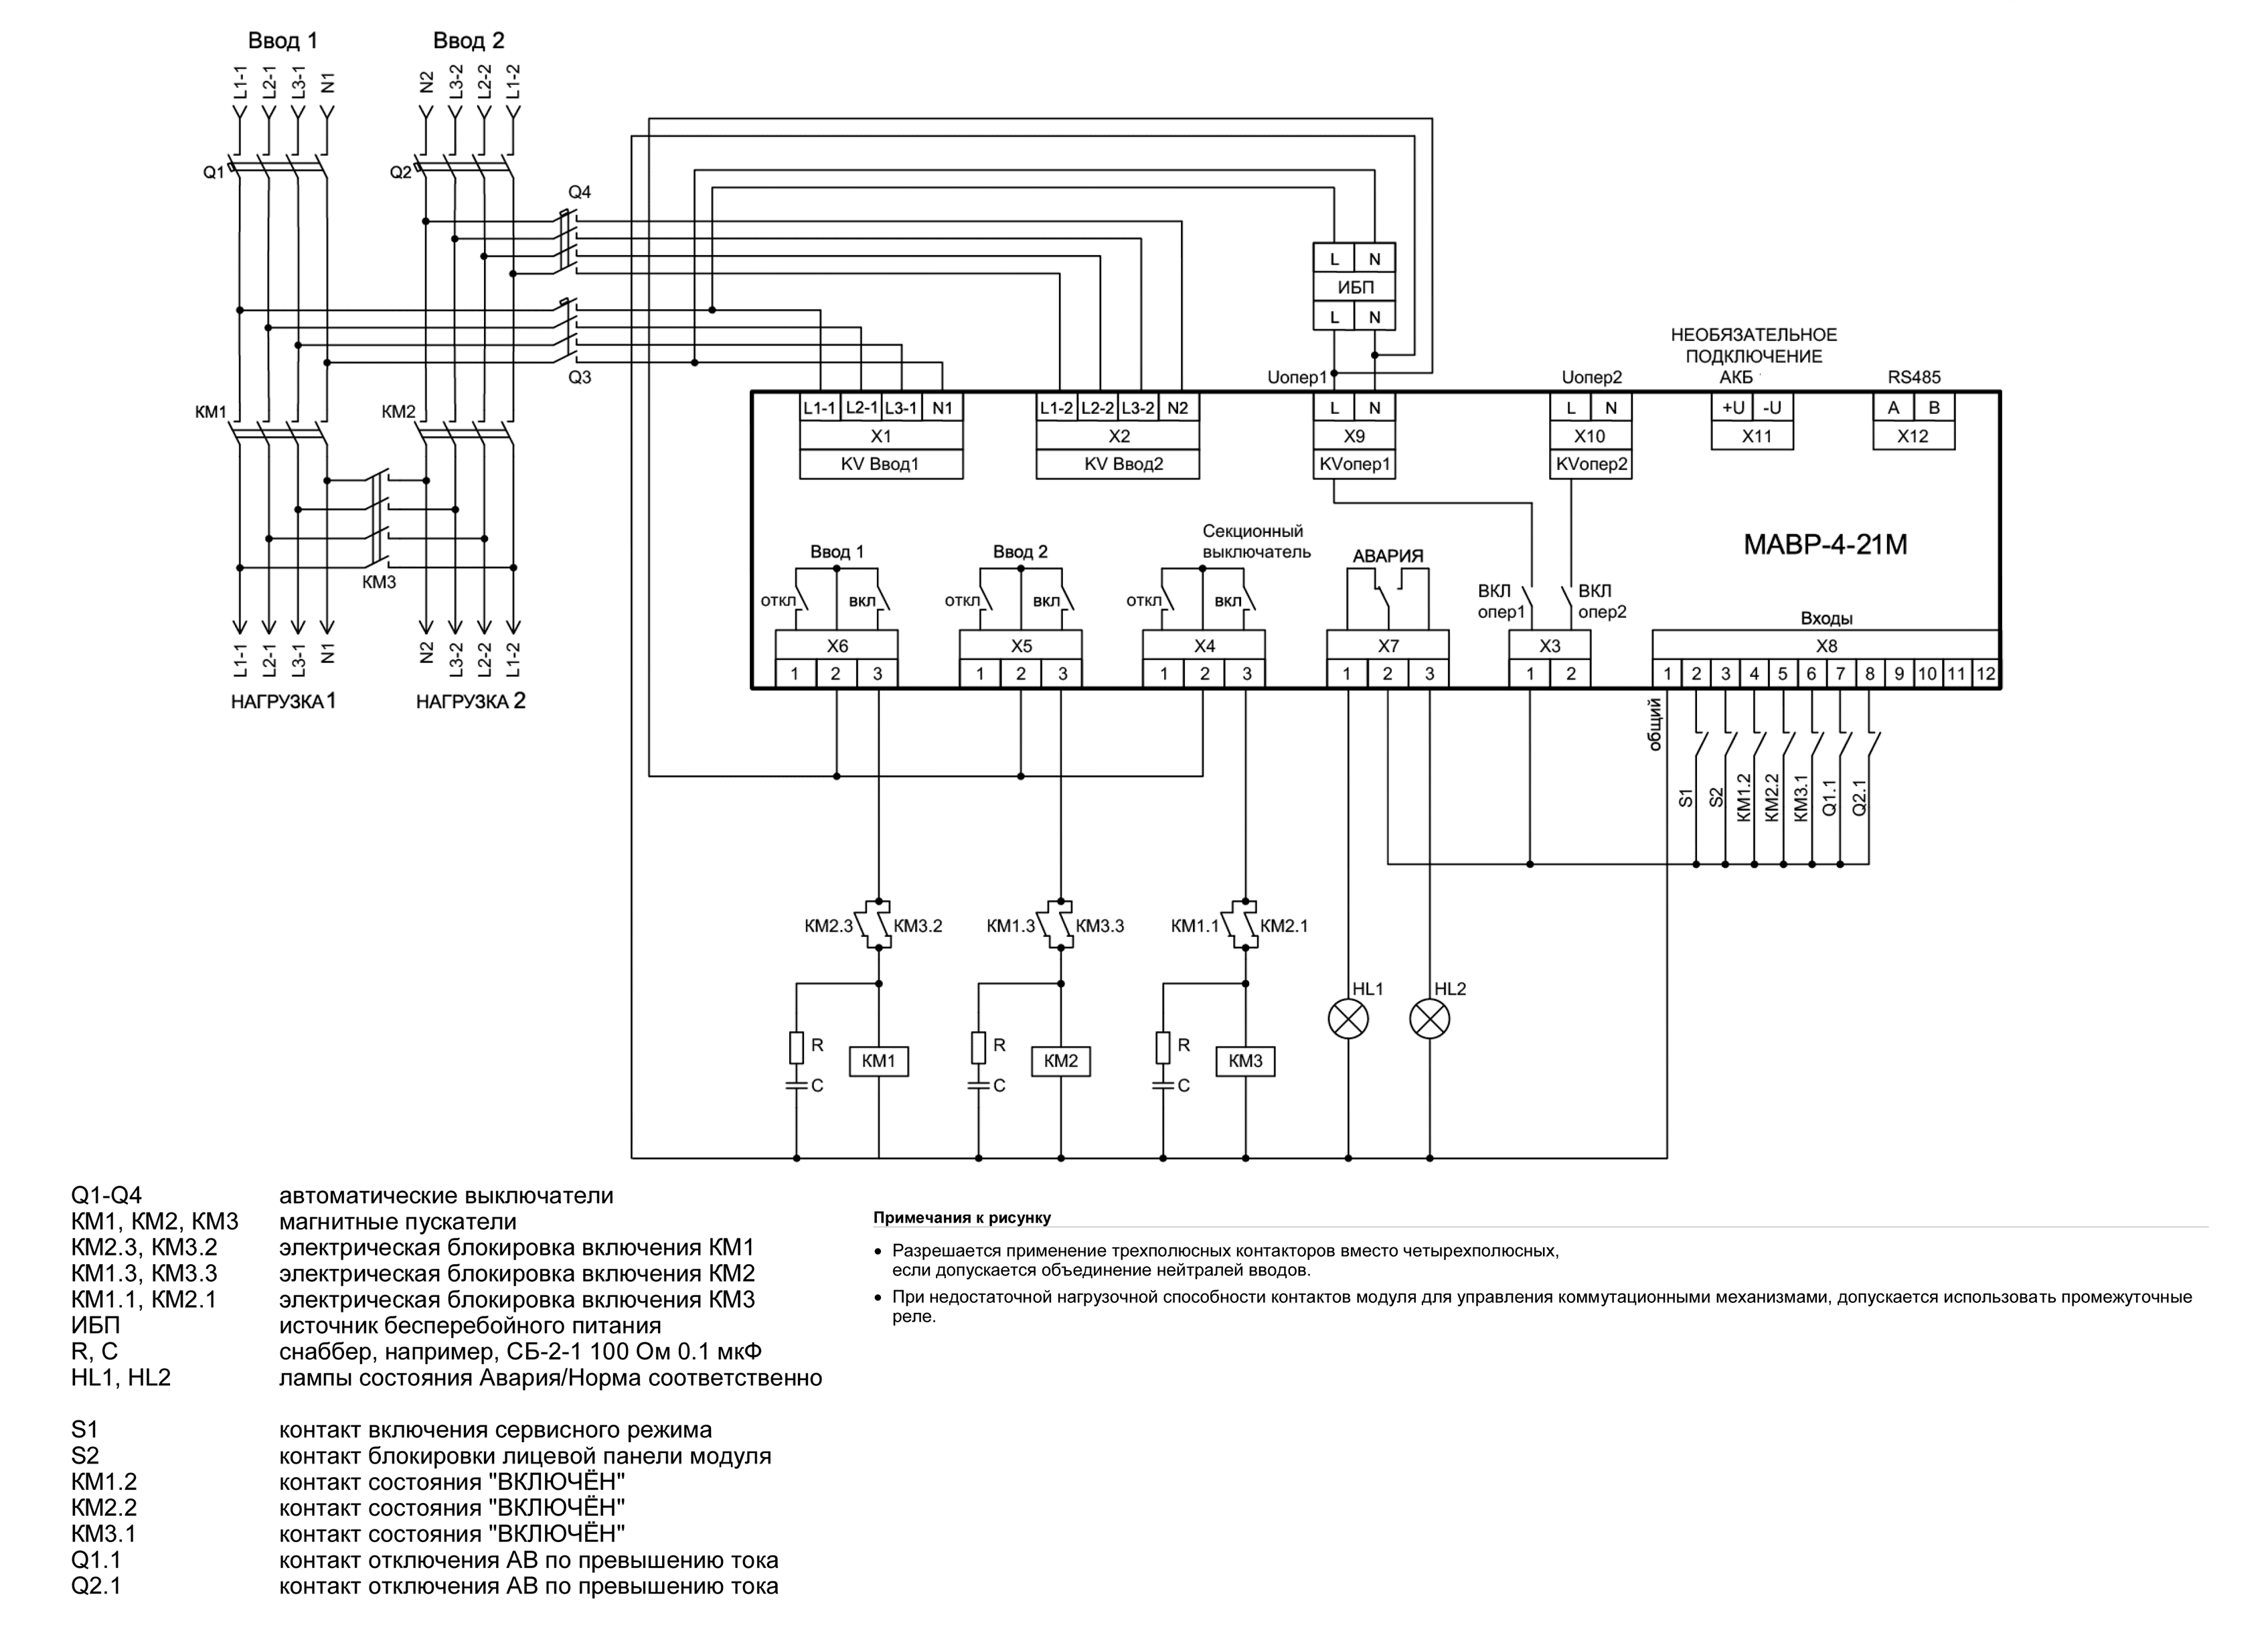 Схема АВР на магнитных пускателях (для работы модуля в режиме «КМ от ОП») МАВР-4-21М